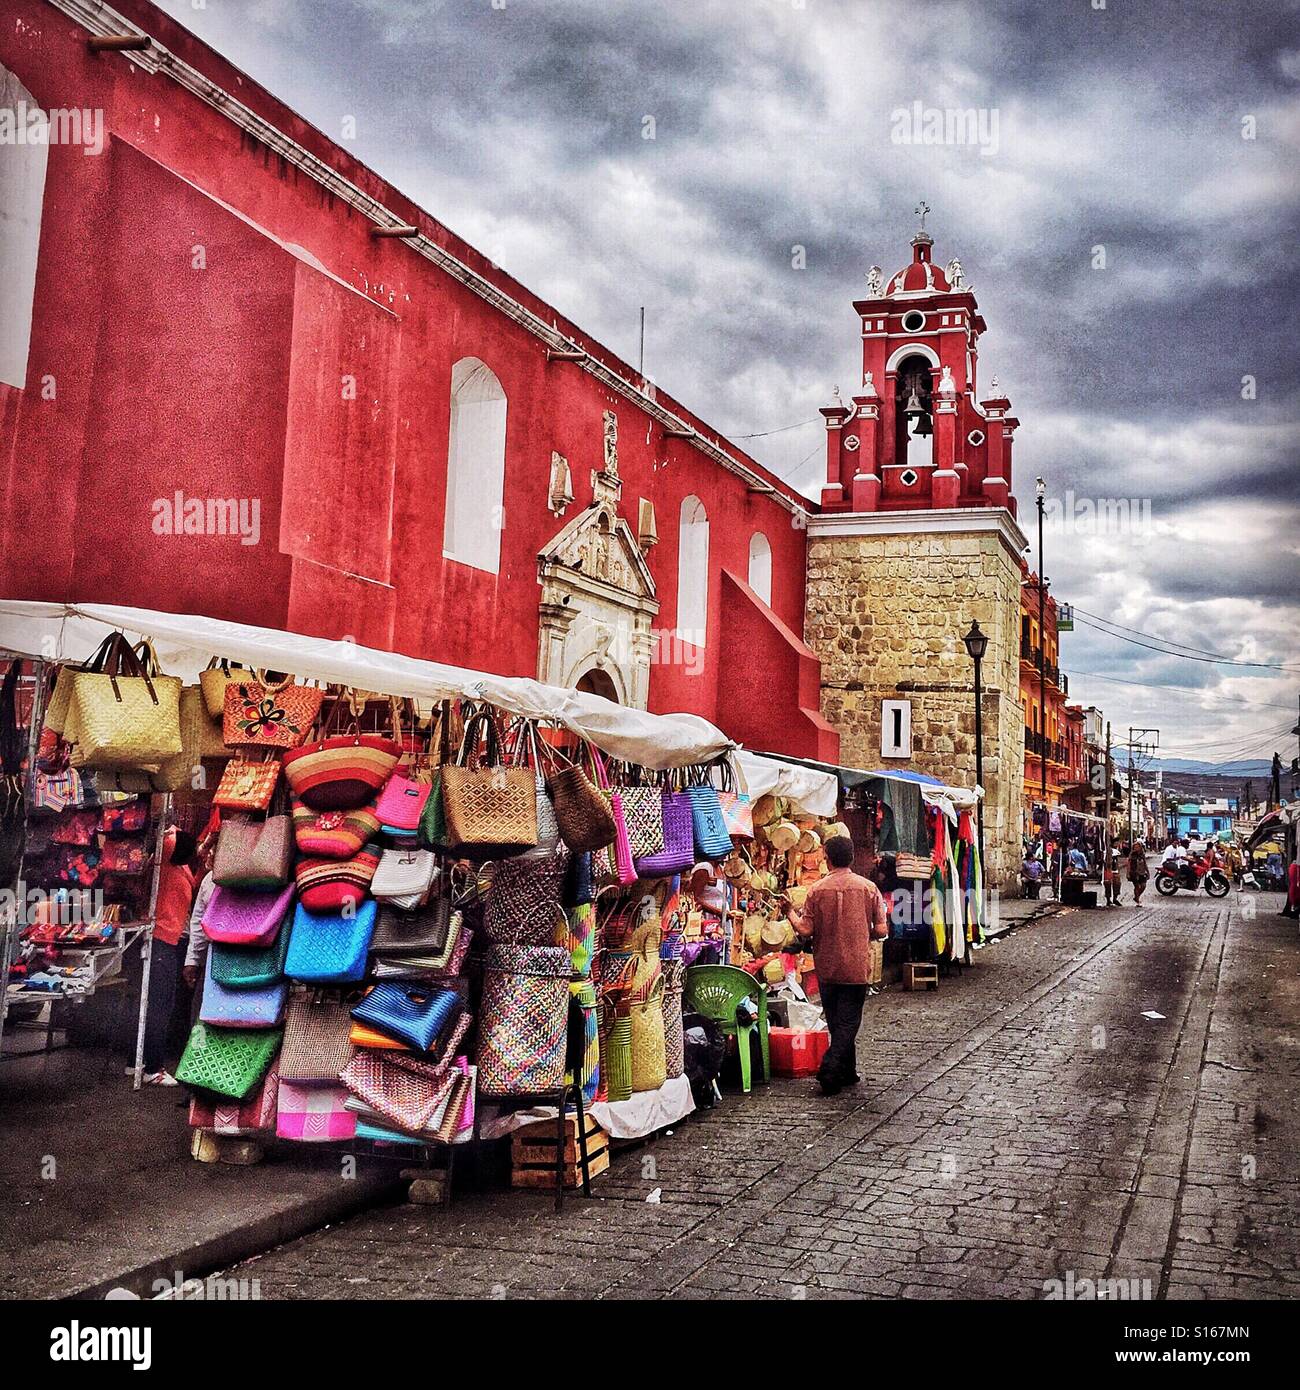 Un colorato marciapiede street market venditore in Oaxaca visualizza borse e borsette in ogni colore per catturare l'attenzione degli acquirenti. Foto Stock